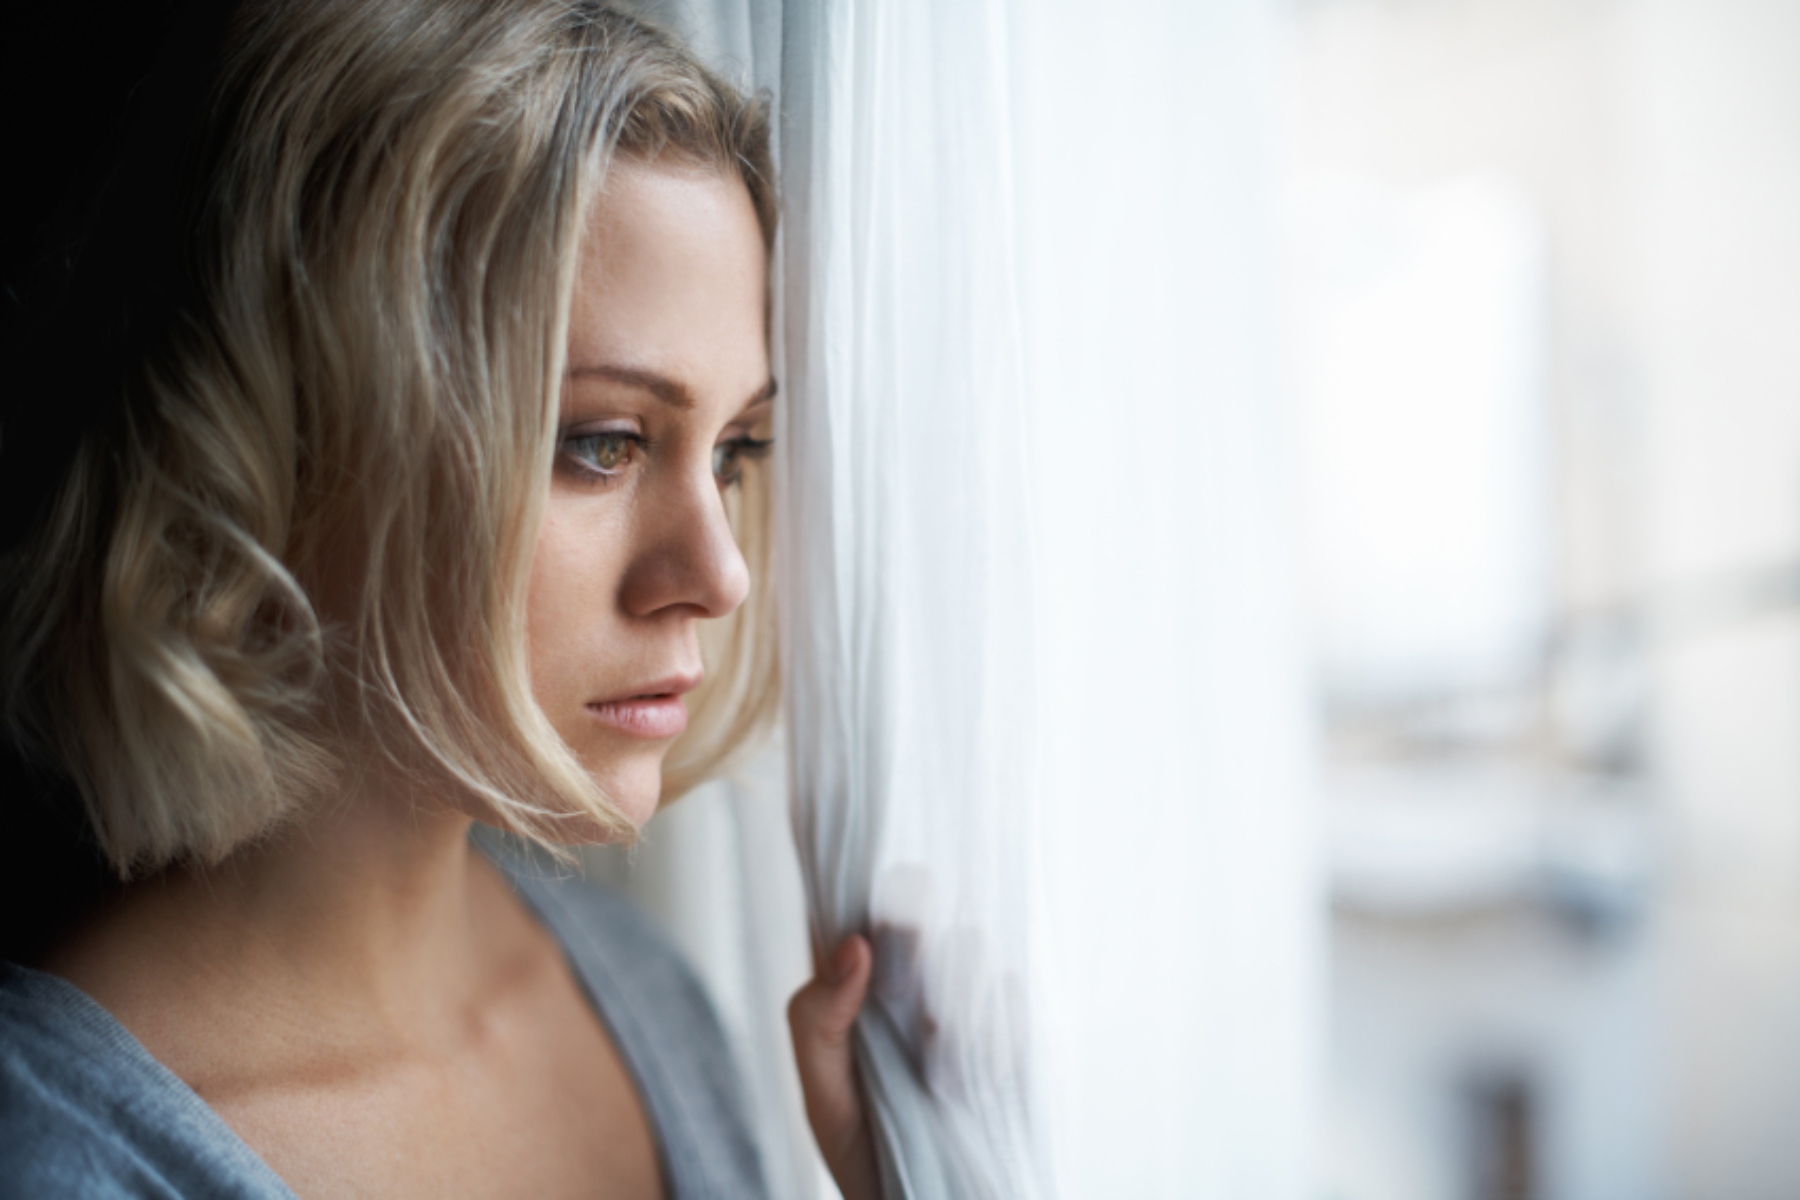 Τεστ κατάθλιψης με εικόνες – Μπορούν να βοηθήσουν στη διάγνωση;